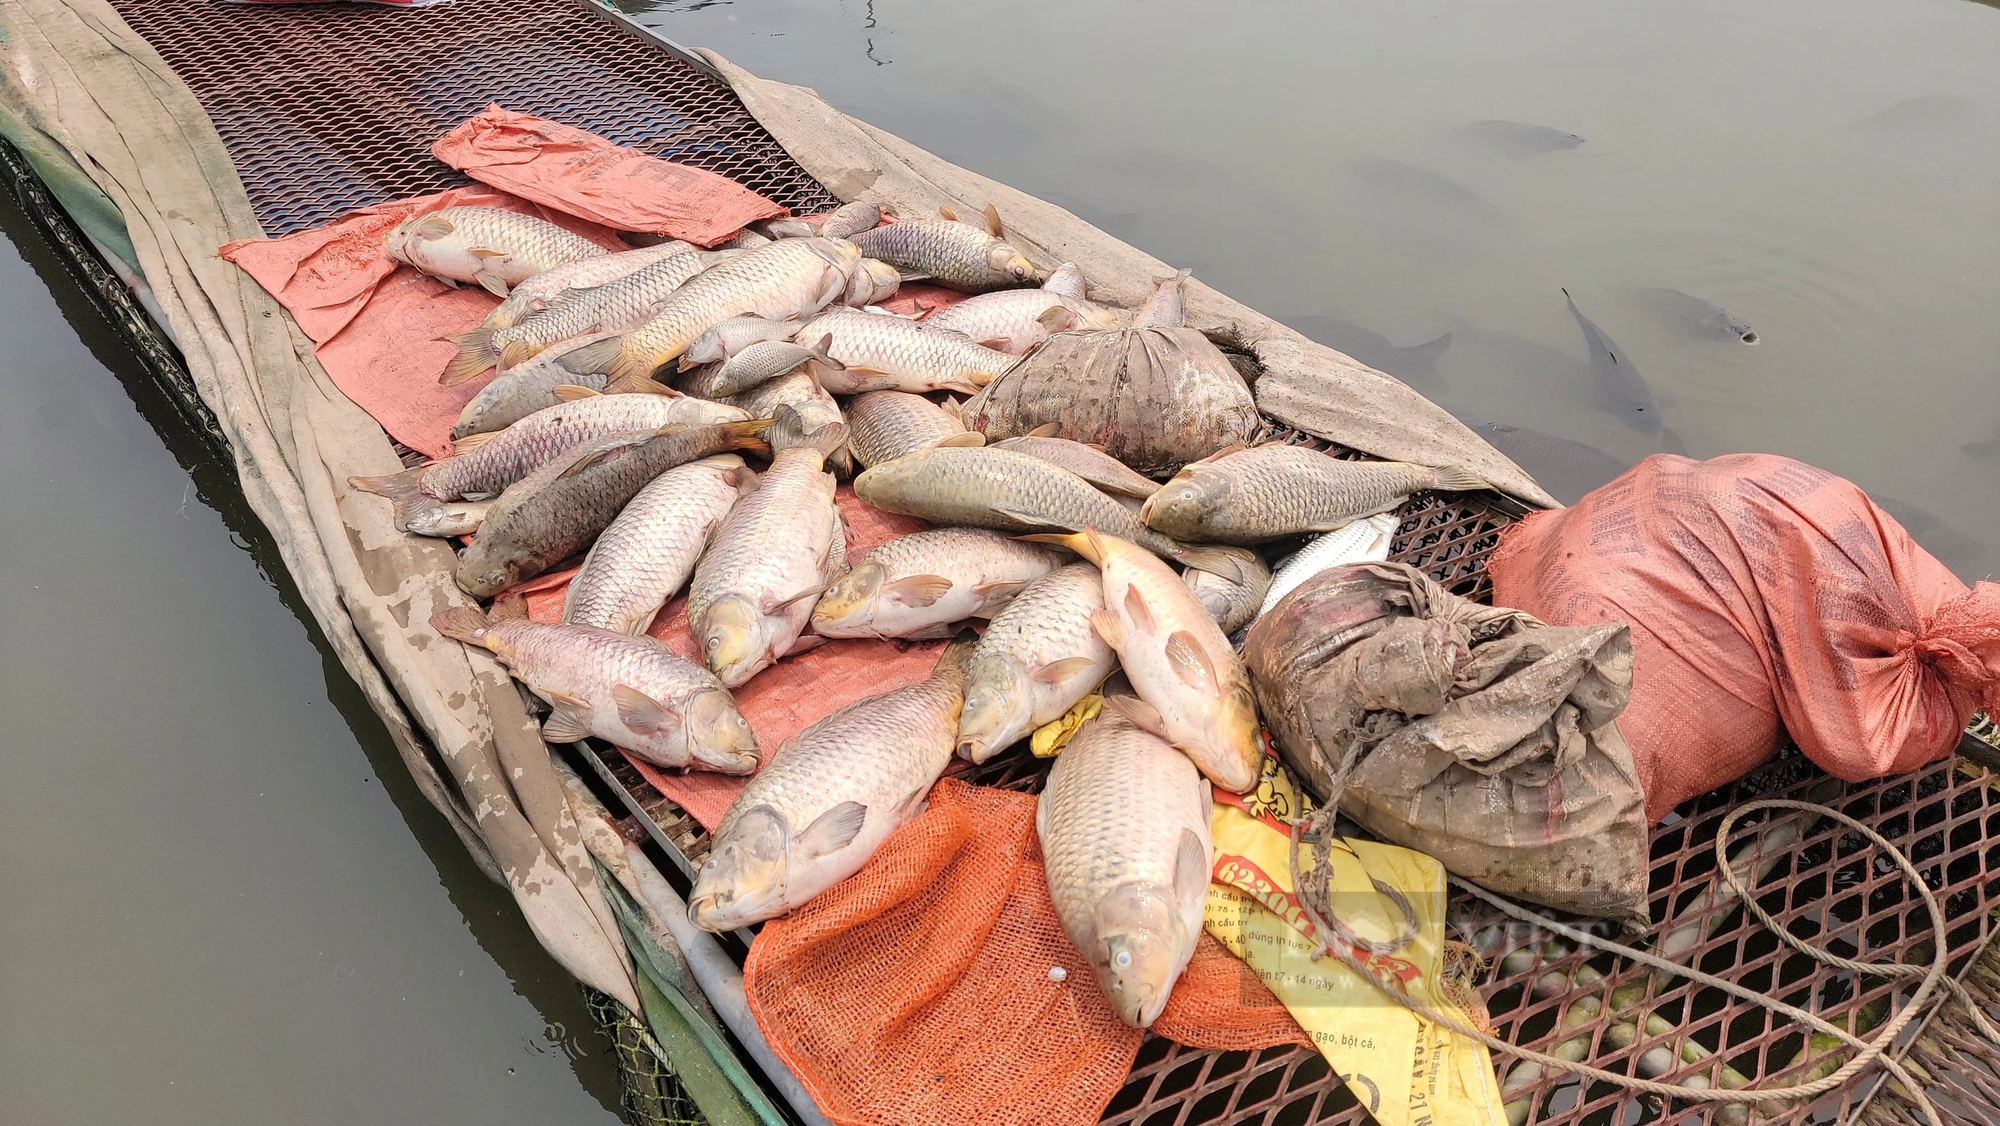 Trăm tấn cá chết bất thường trên sông Thái Bình ở TP Hải Dương, dân buồn hụt hẫng, có nhà "trôi tiền tỷ"- Ảnh 2.